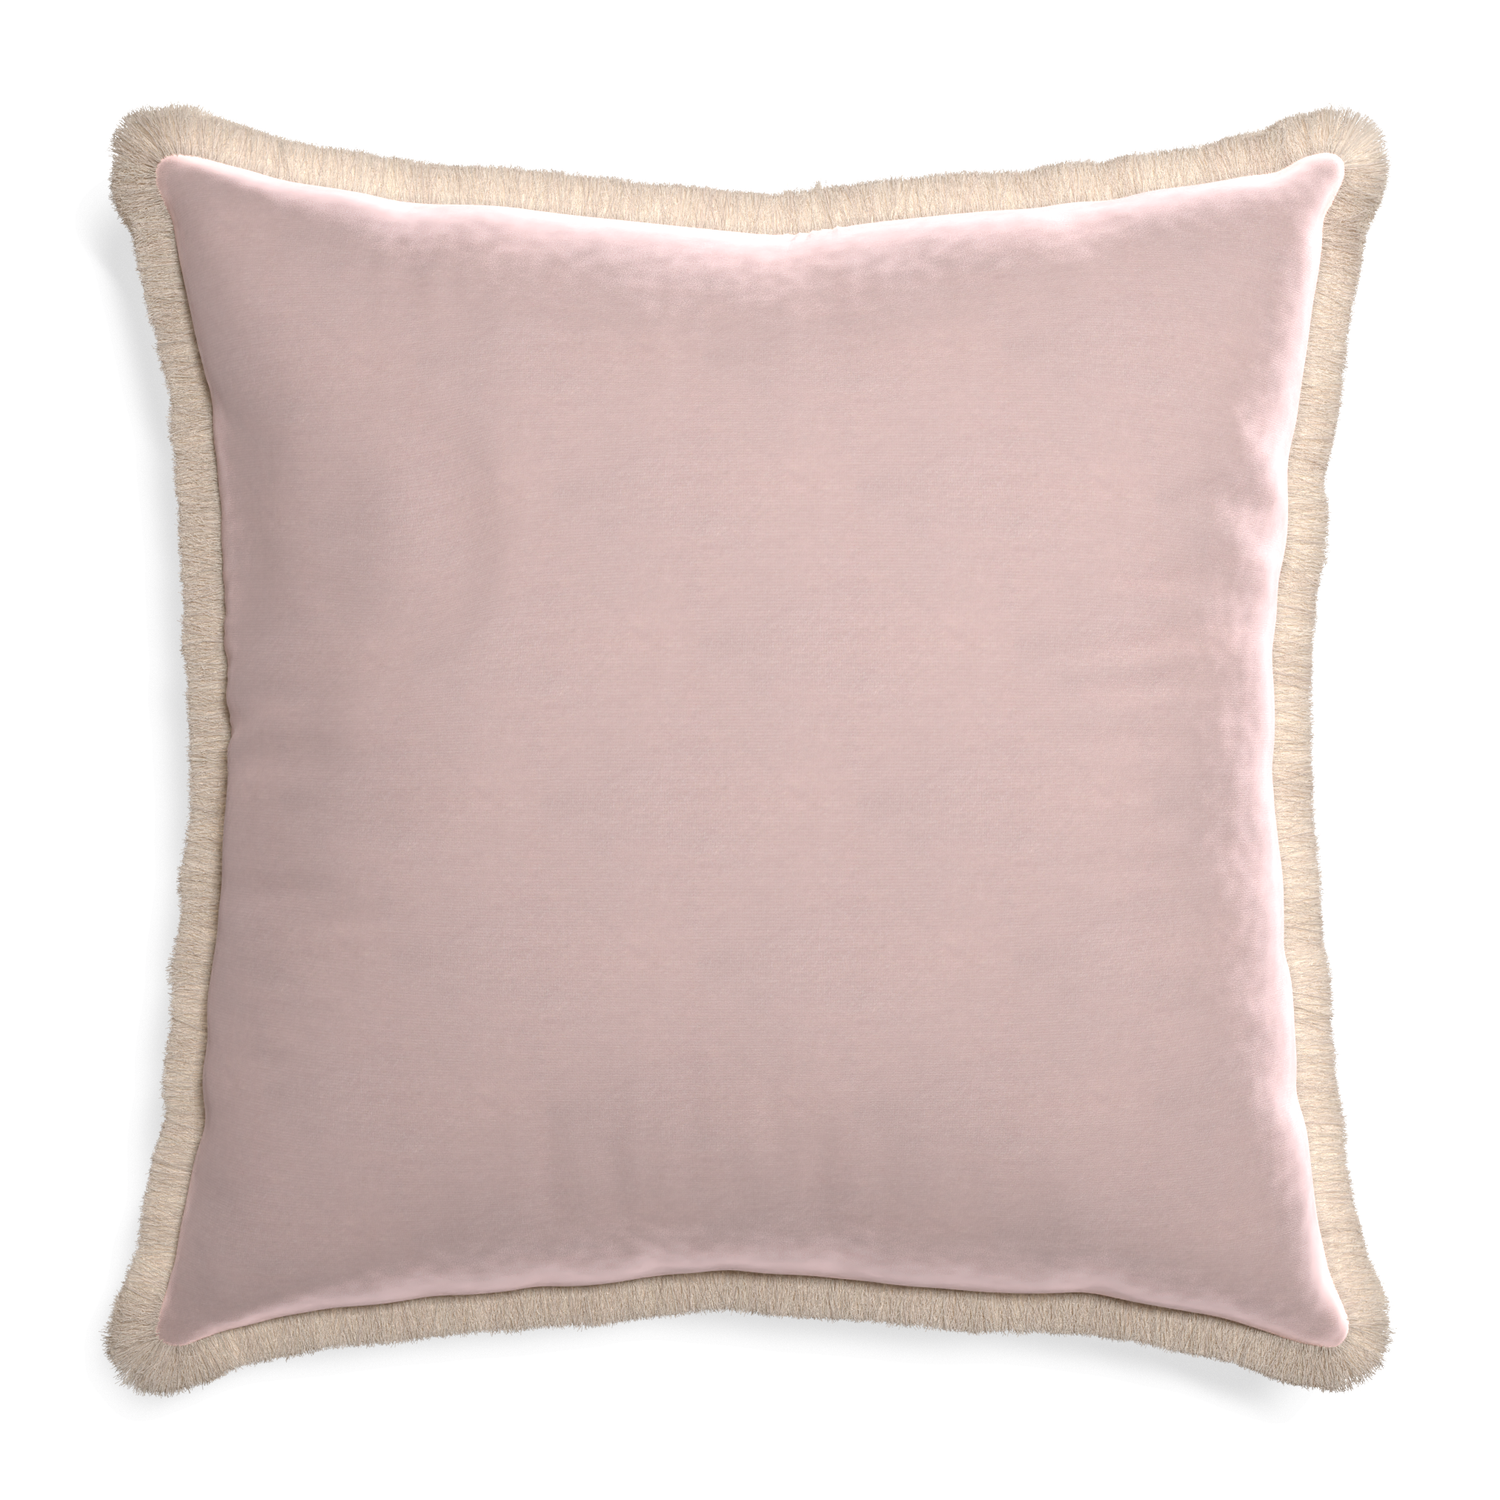 Euro-sham rose velvet custom pillow with cream fringe on white background